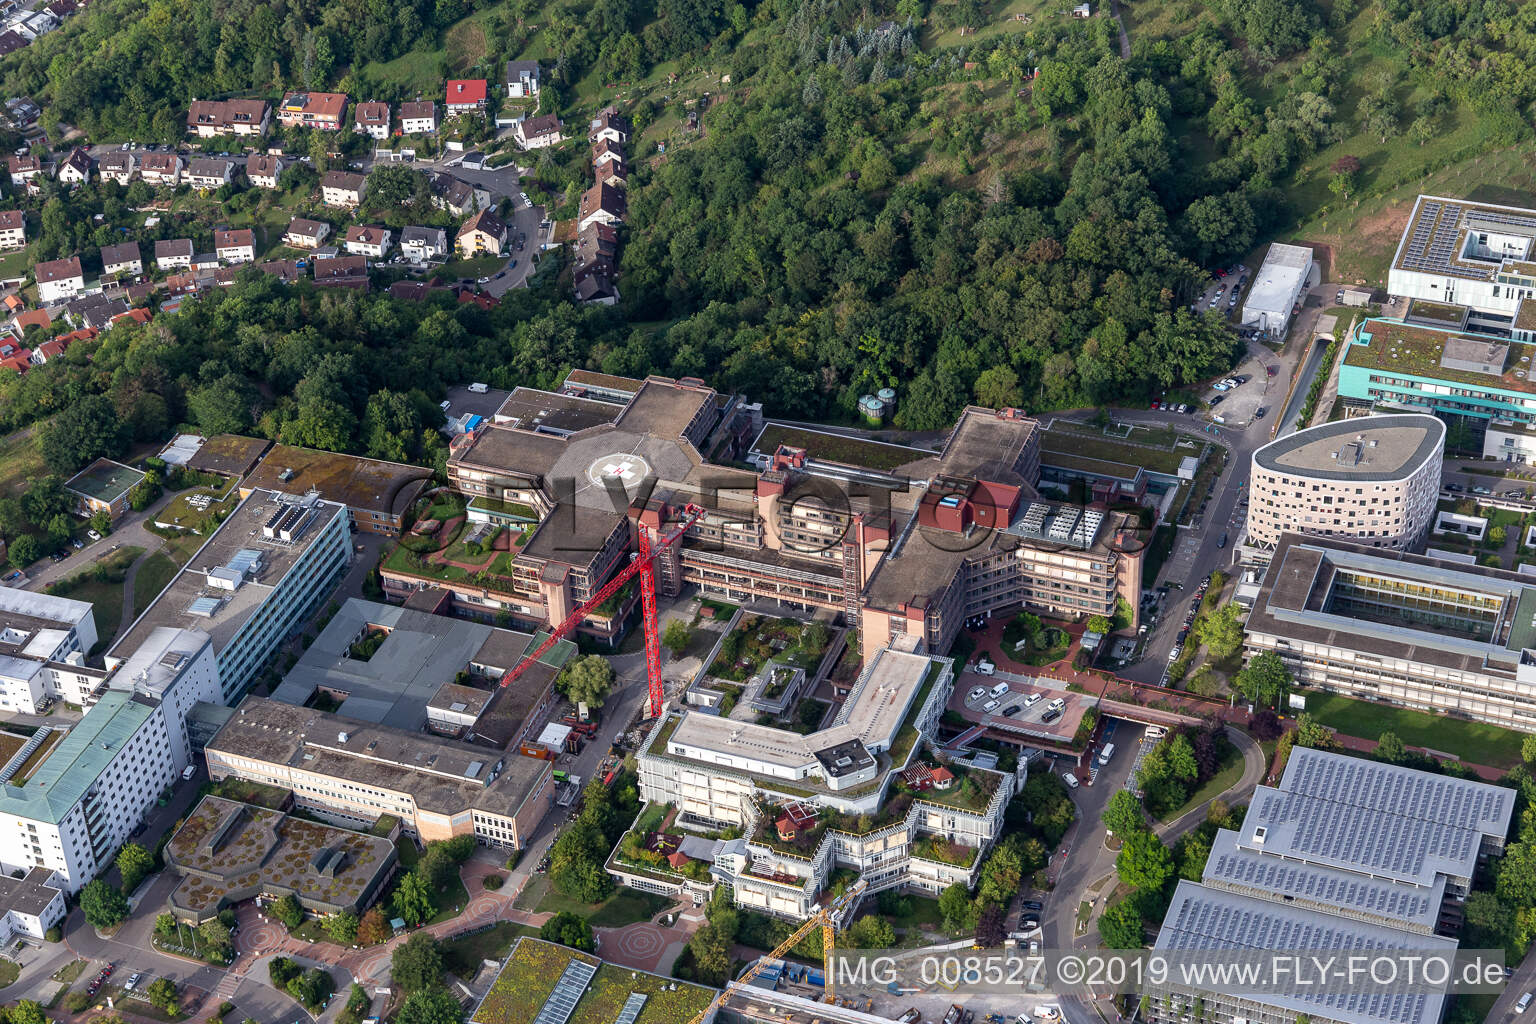 Hôpital universitaire Tübingen à Tübingen dans le département Bade-Wurtemberg, Allemagne vue d'en haut